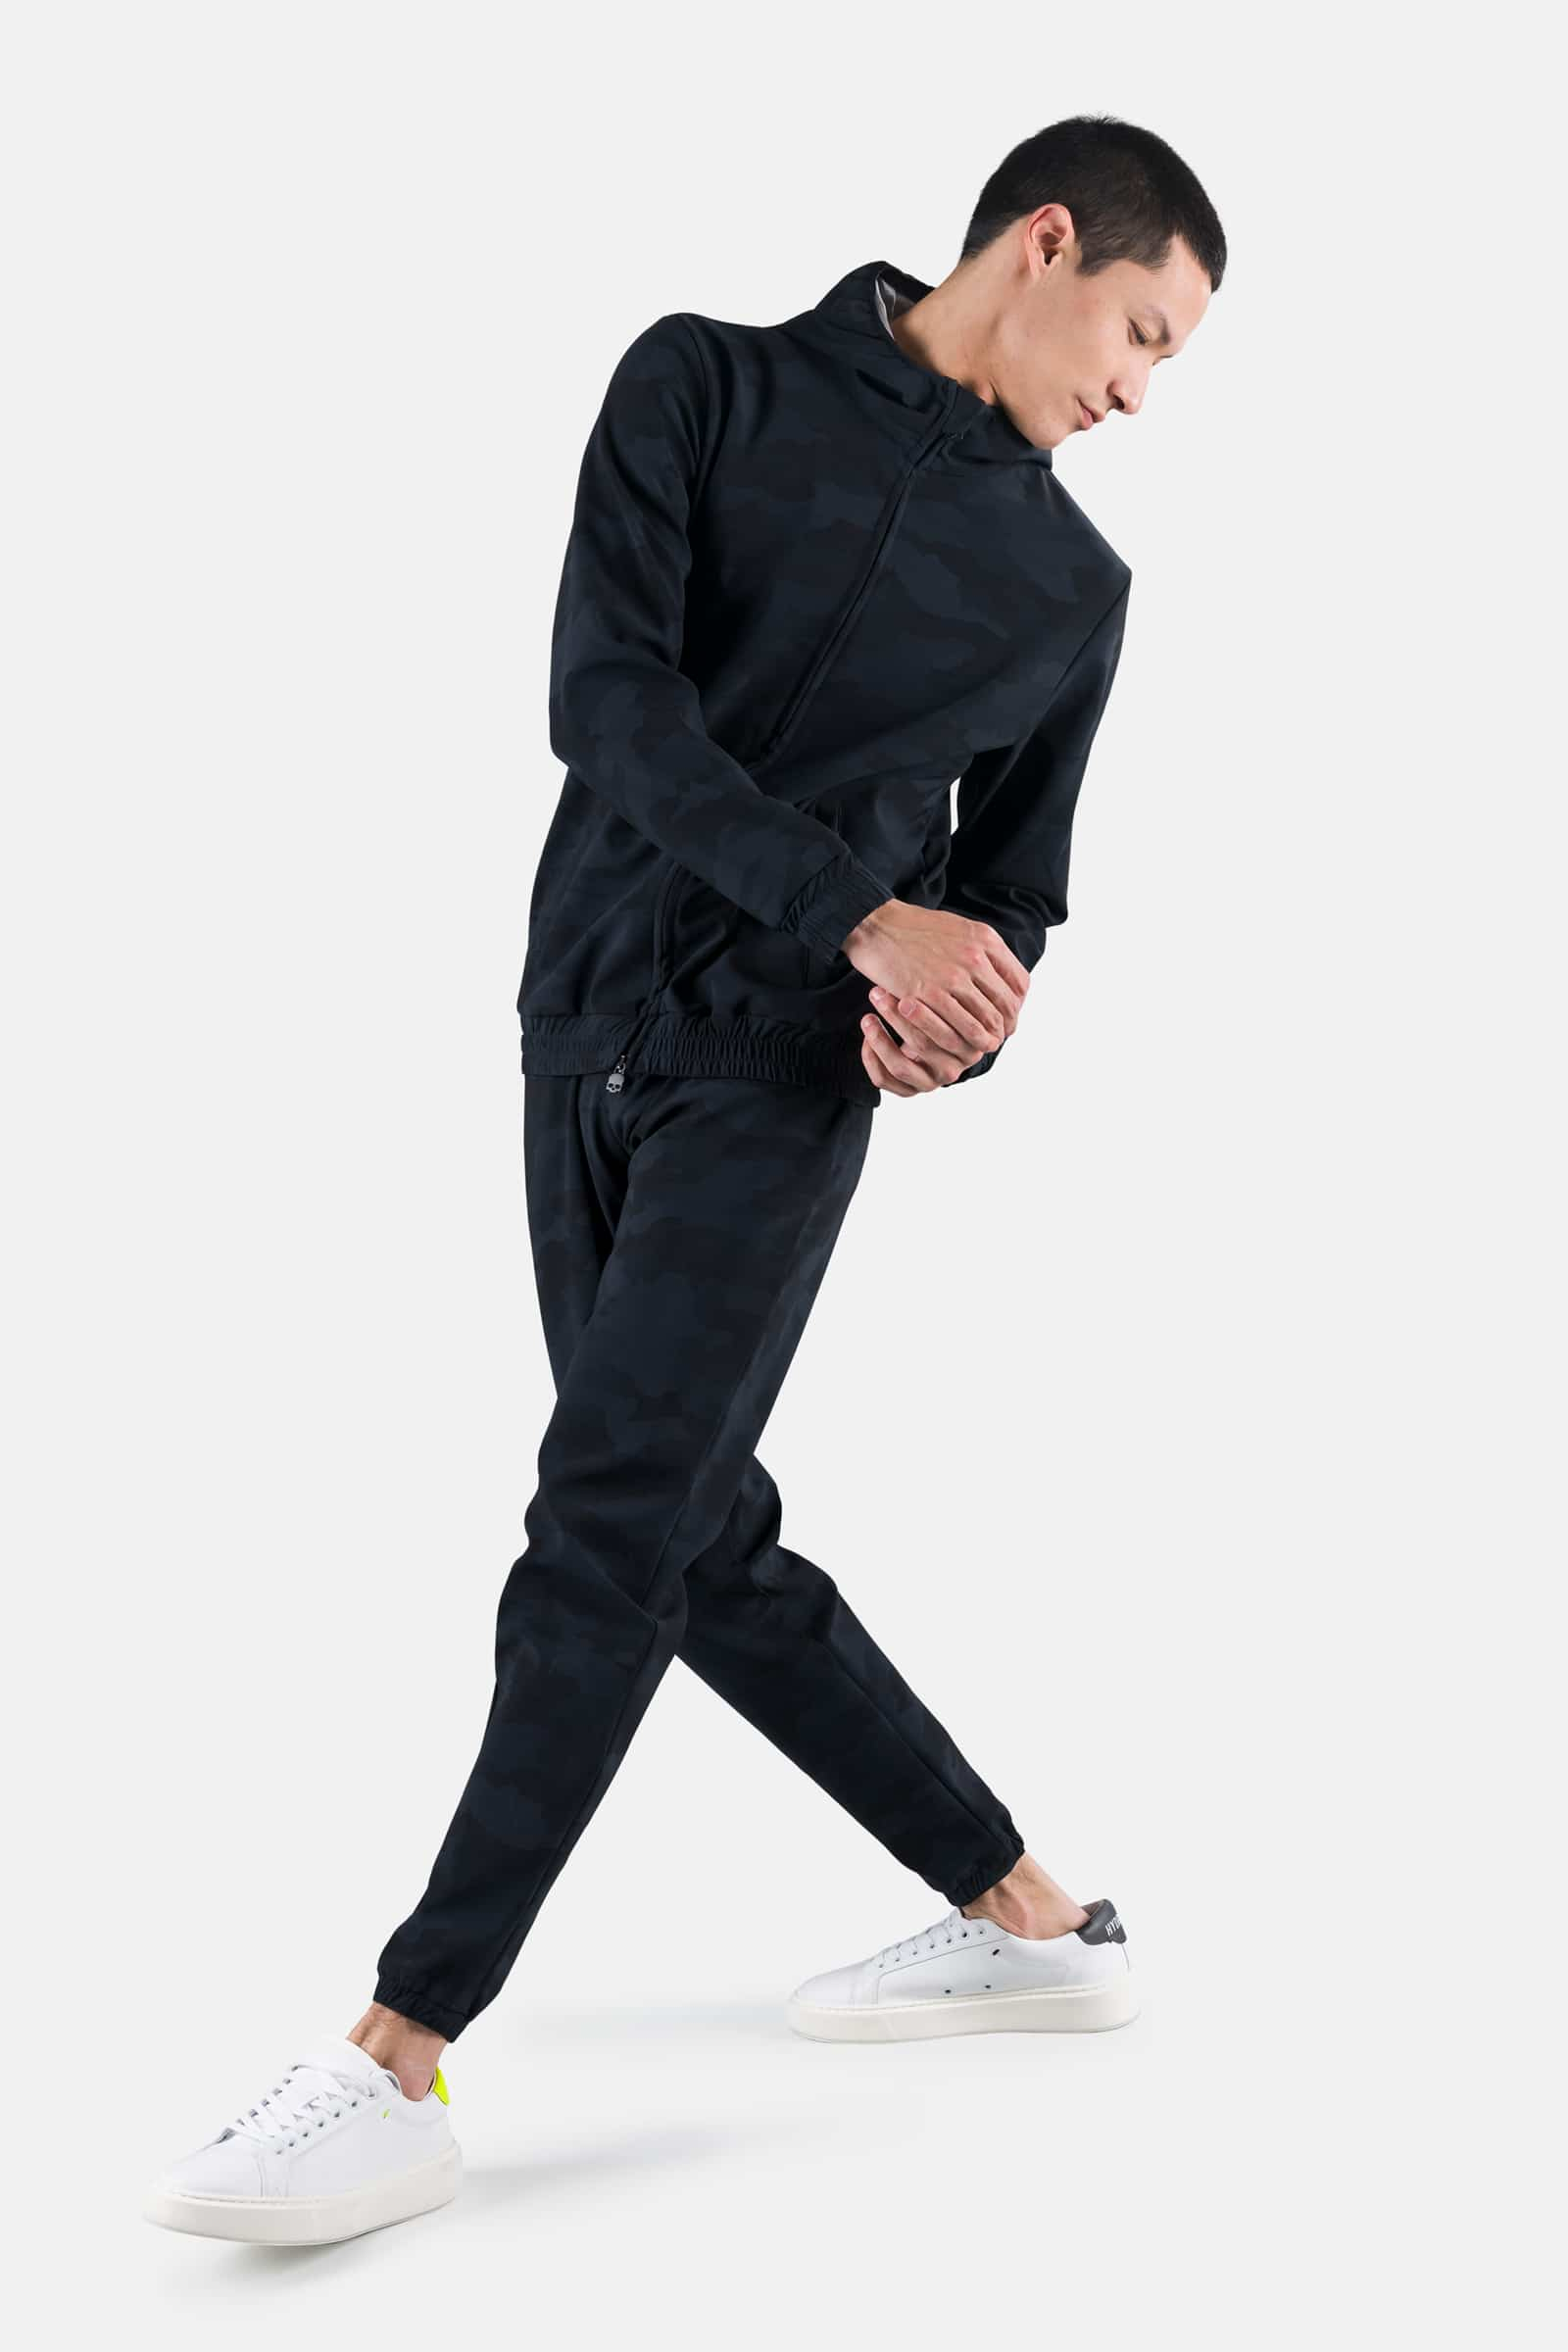 URBAN HOODIE - Apparel - Outlet Hydrogen - Luxury Sportwear